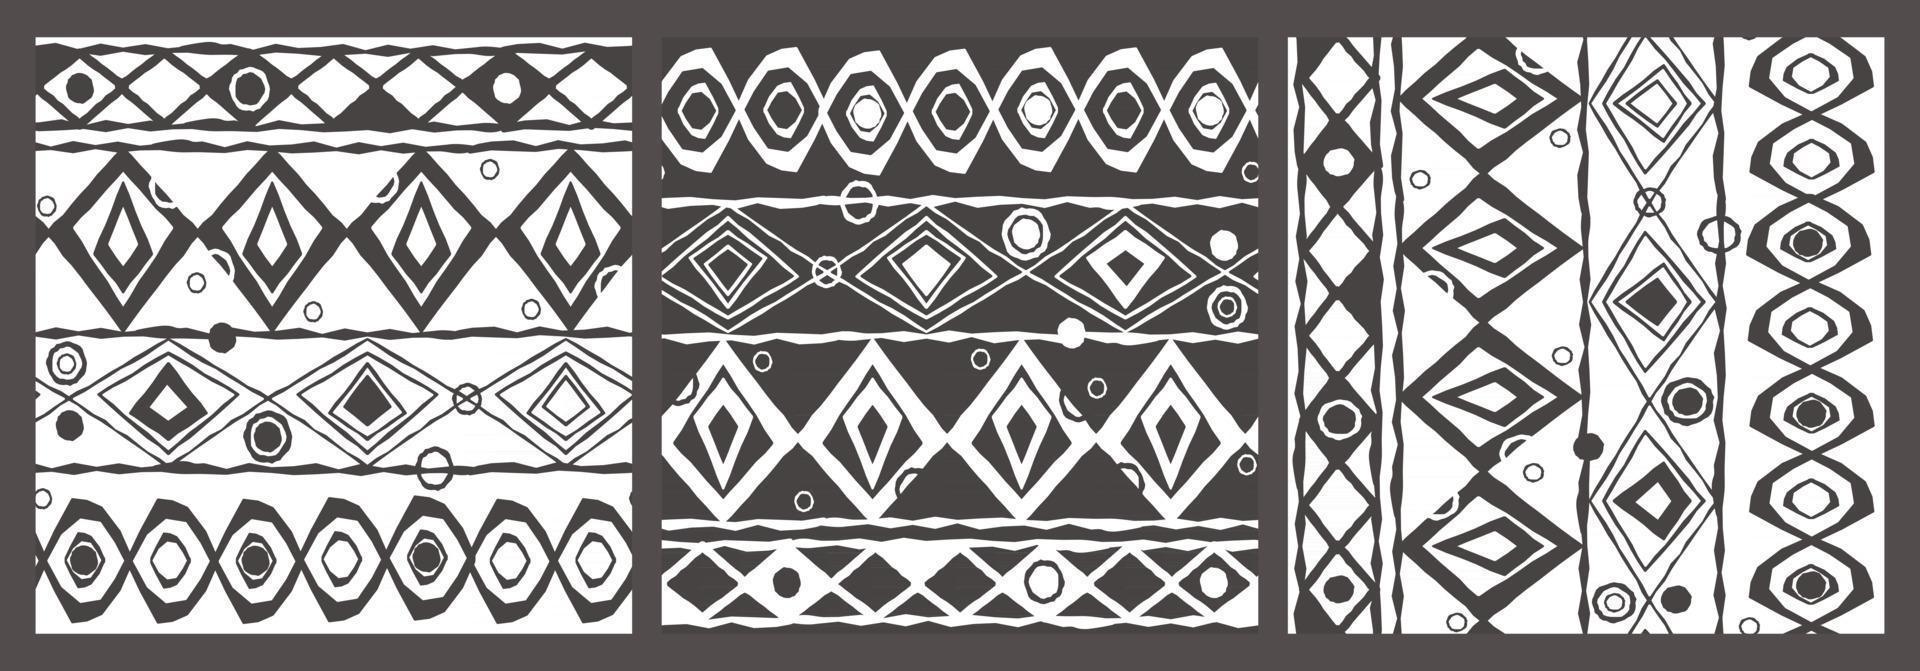 cinza branco sem costura padrão geométrico sem fim de círculos curvos, arcos, losangos, triângulos. motivos étnicos. a imagem contém três variantes do mesmo padrão vetor